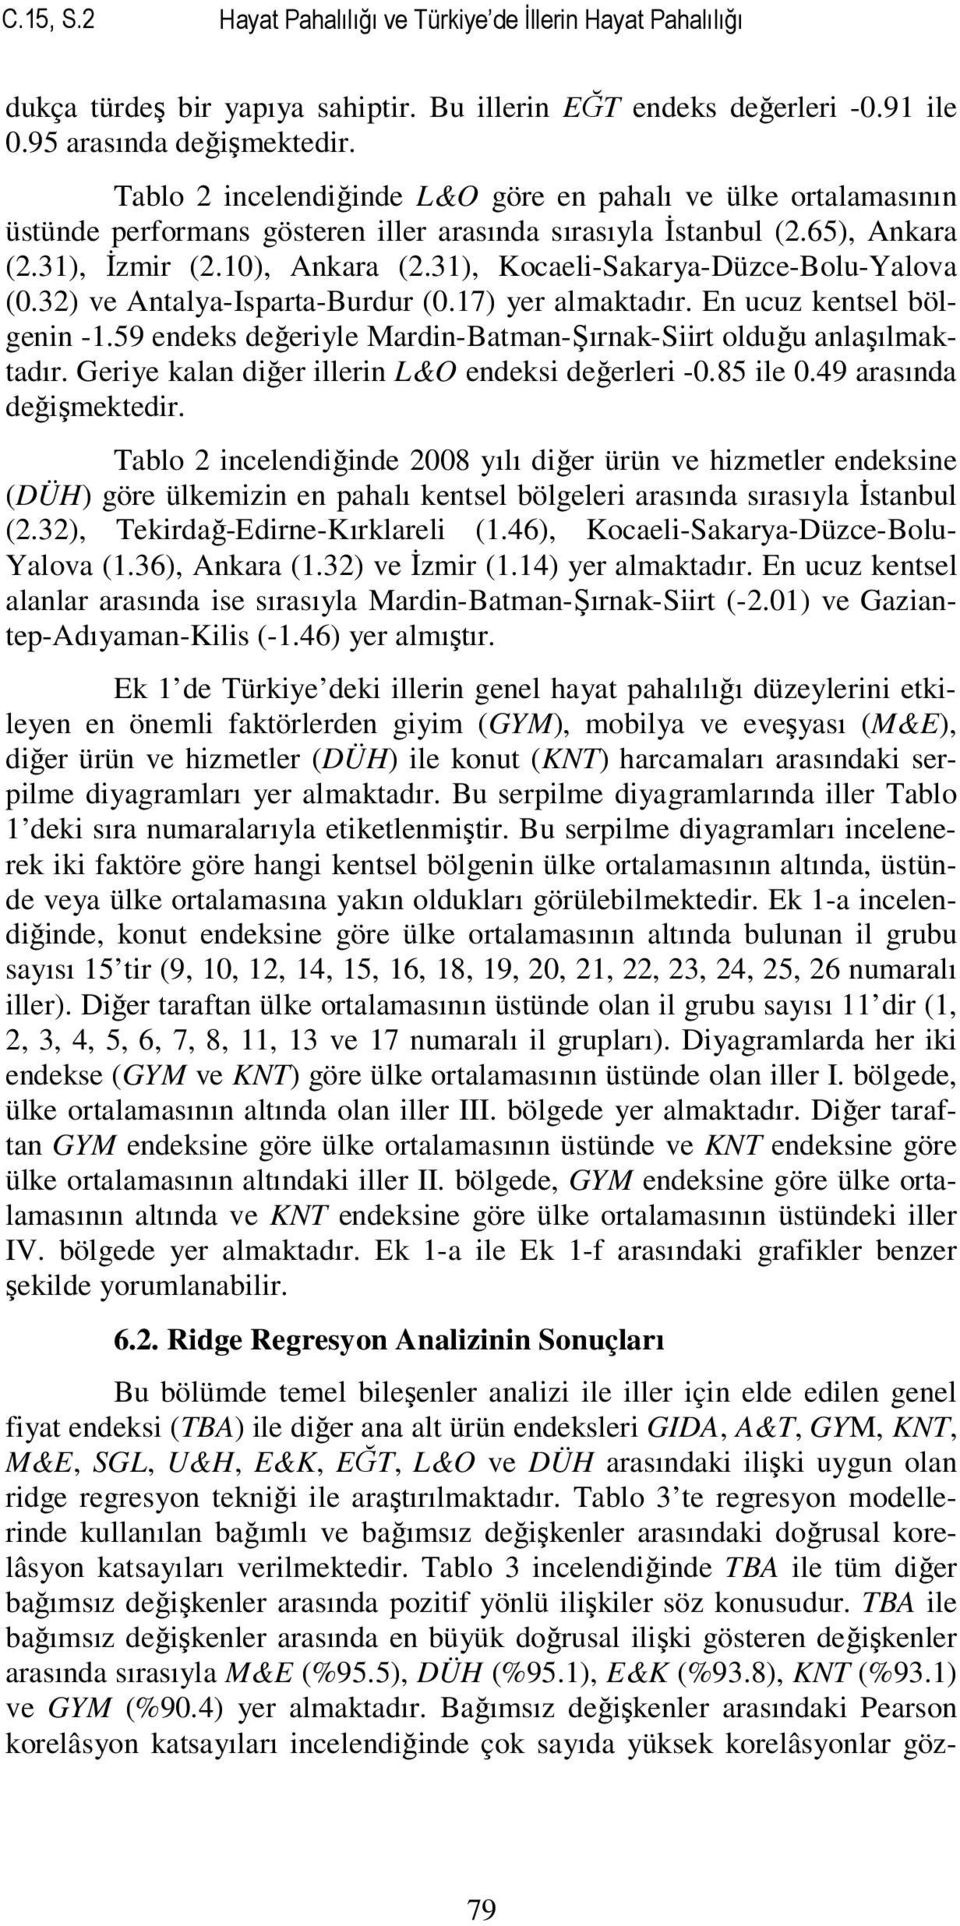 31), Kocaeli-Sakarya-Düzce-Bolu-Yalova (0.32) ve Antalya-Isparta-Burdur (0.17) yer almaktadır. En ucuz kentsel bölgenin -1.59 endeks değeriyle Mardin-Batman-Şırnak-Siirt olduğu anlaşılmaktadır.